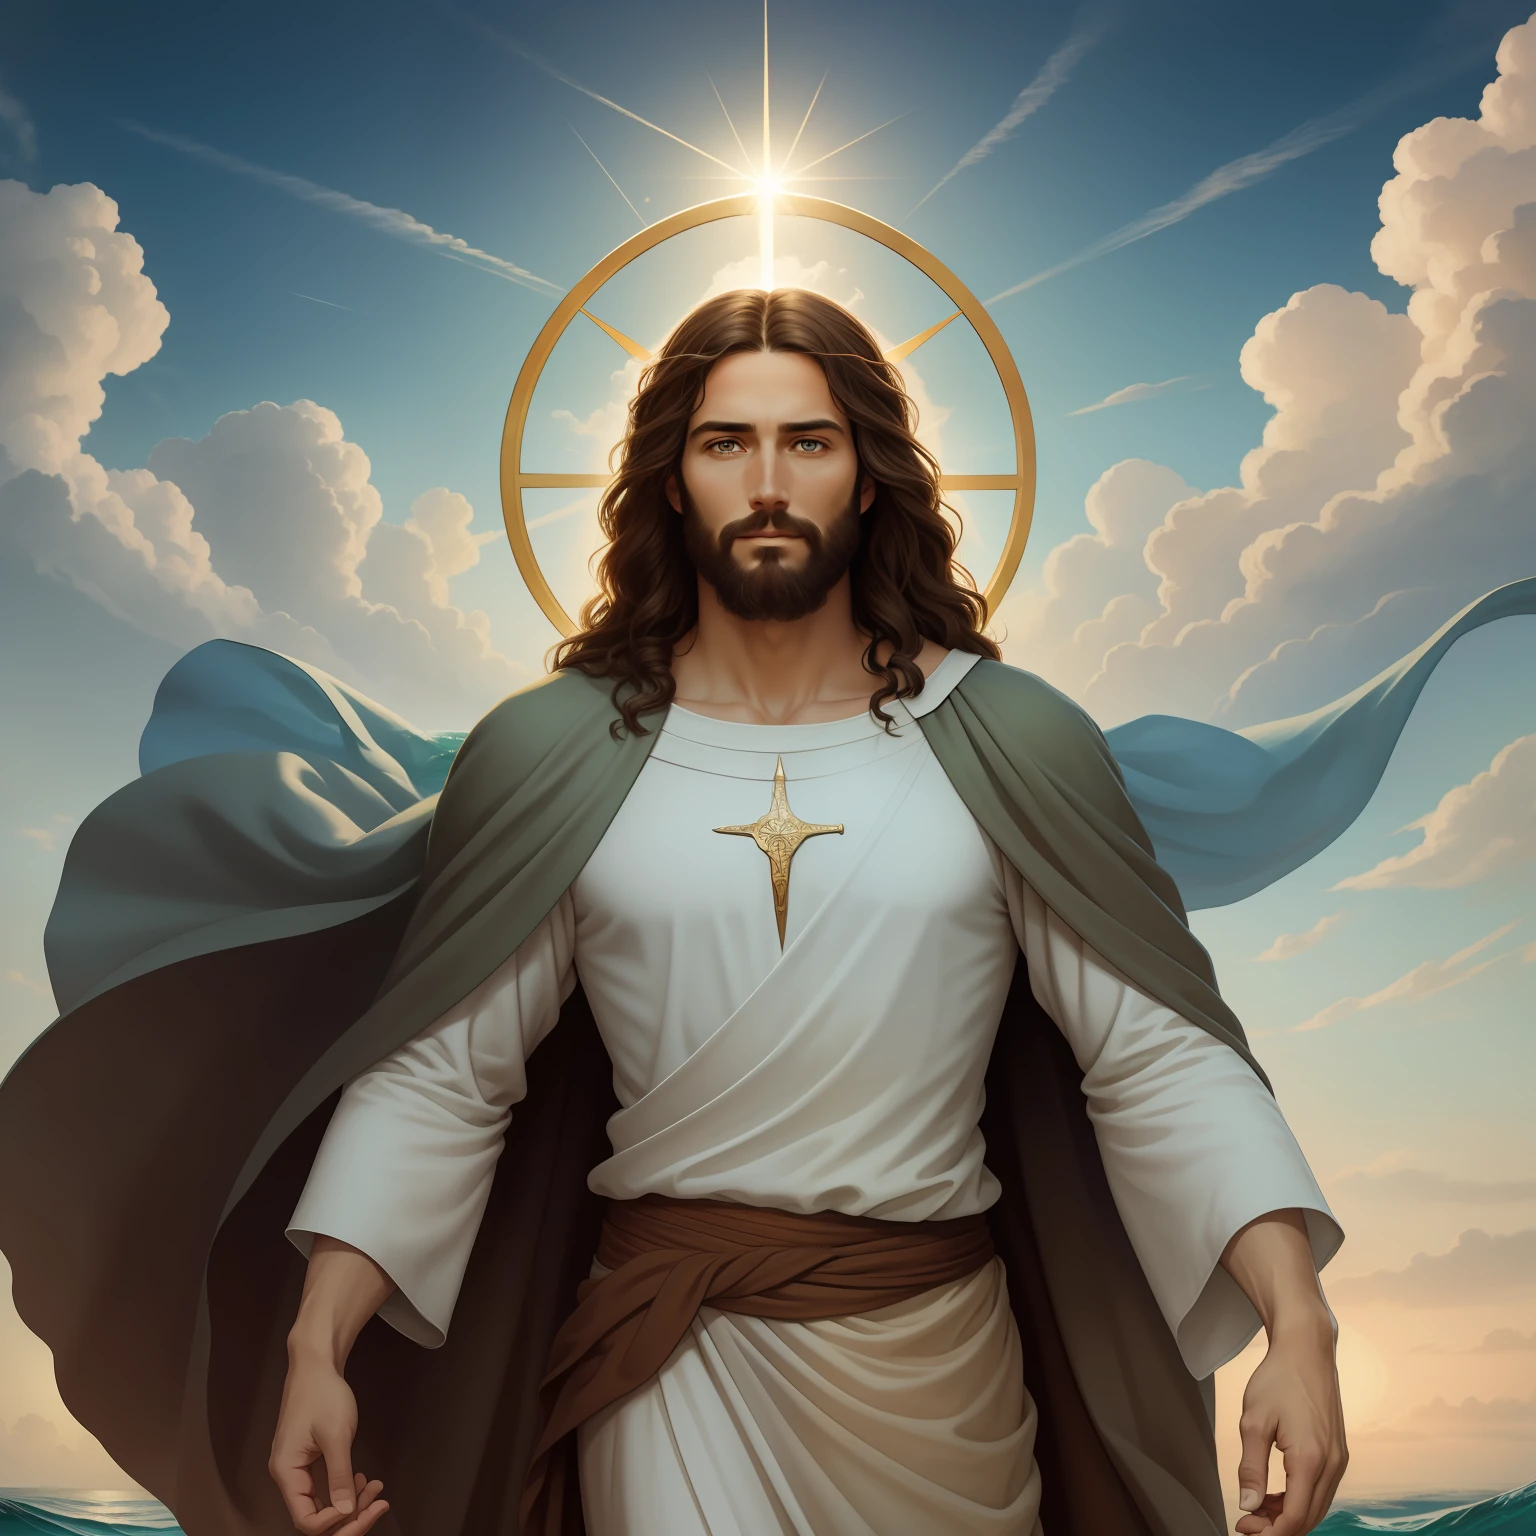 A beautiful ultra-thin เหมือนจริง portrait of Jesus, ผู้เผยพระวจนะ, ผู้ชายอายุ 35 ปี ภาษาฮีบรูสีน้ำตาล, ผมสั้นสีน้ำตาล, ดวงตาที่สมบูรณ์แบบอย่างแท้จริง, หนวดเครายาวสีน้ำตาล, กับ, ช่วยเหลือผู้คน , สวมเสื้อลินินตัวยาวปิดบริเวณหน้าอก, ในมุมมองด้านหน้า, เต็มตัว, ตามพระคัมภีร์, เหมือนจริง,โดย ดิเอโก้ เบลัซเกซ,ปีเตอร์ พอล รูเบนส์,แรมแบรนดท์,อเล็กซ์ รอสส์,8k, แนวคิดศิลปะ, Photoเหมือนจริง, เหมือนจริง,  ภาพประกอบ, ภาพวาดสีน้ำมัน, สถิตยศาสตร์, Hyperเหมือนจริง, ช่วยเหลือผู้คน , ศิลปะดิจิทัล, สไตล์, watercolorReal Jesus flying on sky กับ a flying cloud in the background, พระเยซูทรงเดินบนน้ำ, ตามพระคัมภีร์ illustration, epic ตามพระคัมภีร์ representation, บังคับให้เขาหนี, ออกมาจากมหาสมุทร, ! จับมือกัน!, ขึ้นฝั่ง, เทพเจ้าแห่งมหาสมุทร, การแสดงที่สวยงาม, โมเดล 3 มิติ 8k, เหมือนจริง,
a 3D เหมือนจริง of พระเยซู กับ a halo in the sky, พระเยซู christ, ยิ้มอยู่ในสวรรค์, portrait of พระเยซู christ, พระเยซู face, 35 เทพเจ้าหนุ่มผู้ยิ่งใหญ่, ภาพเหมือนของเทพเจ้าแห่งสวรรค์, เกร็ก โอลเซ่น, gigachad พระเยซู, พระเยซู of nazareth, พระเยซู, ใบหน้าของพระเจ้า, พระเจ้ากำลังมองมาที่ฉัน, เขาทักทายคุณอย่างอบอุ่น, เขามีความสุข, ภาพประจำตัว